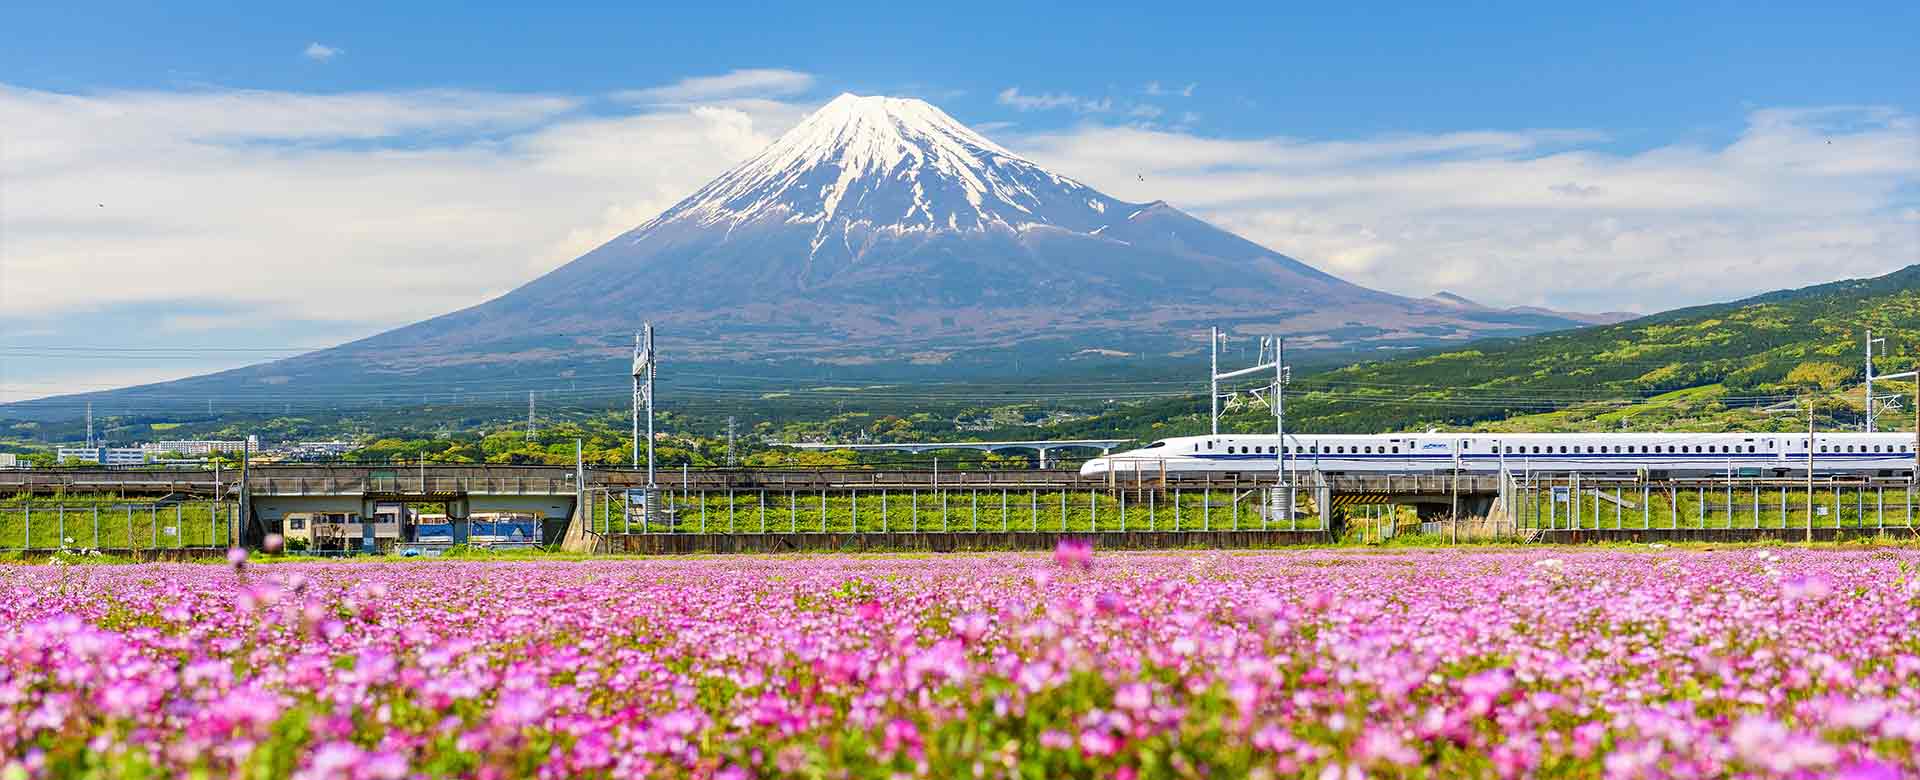 Il treno Shinkansen tra il monte Fuji e la Shibazakura, la fioritura del muschio rosa a Shizuoka